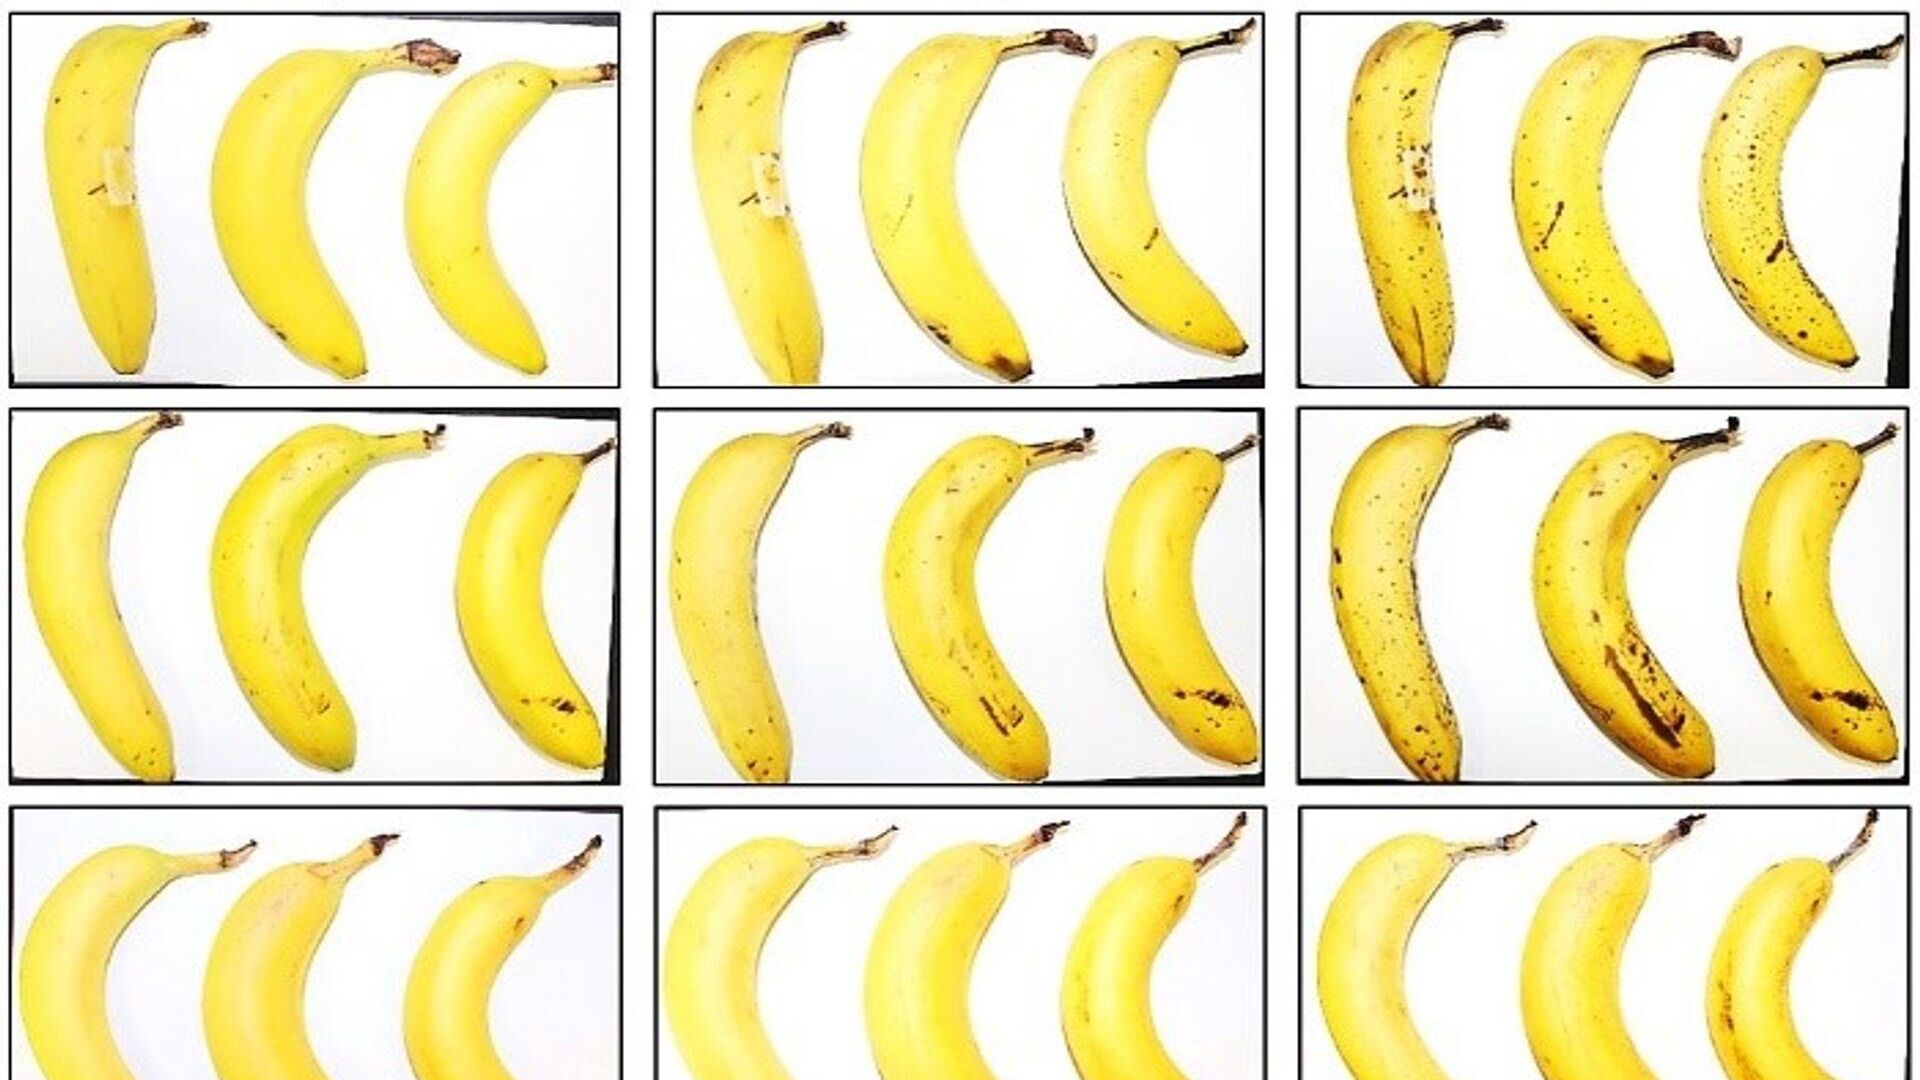 Tre banane sottoposte dall’EMPA e da Lidl Svizzera al test di conservazione con e senza involucro in cellulosa fibrosa dopo zero, 6 e 8 giorni